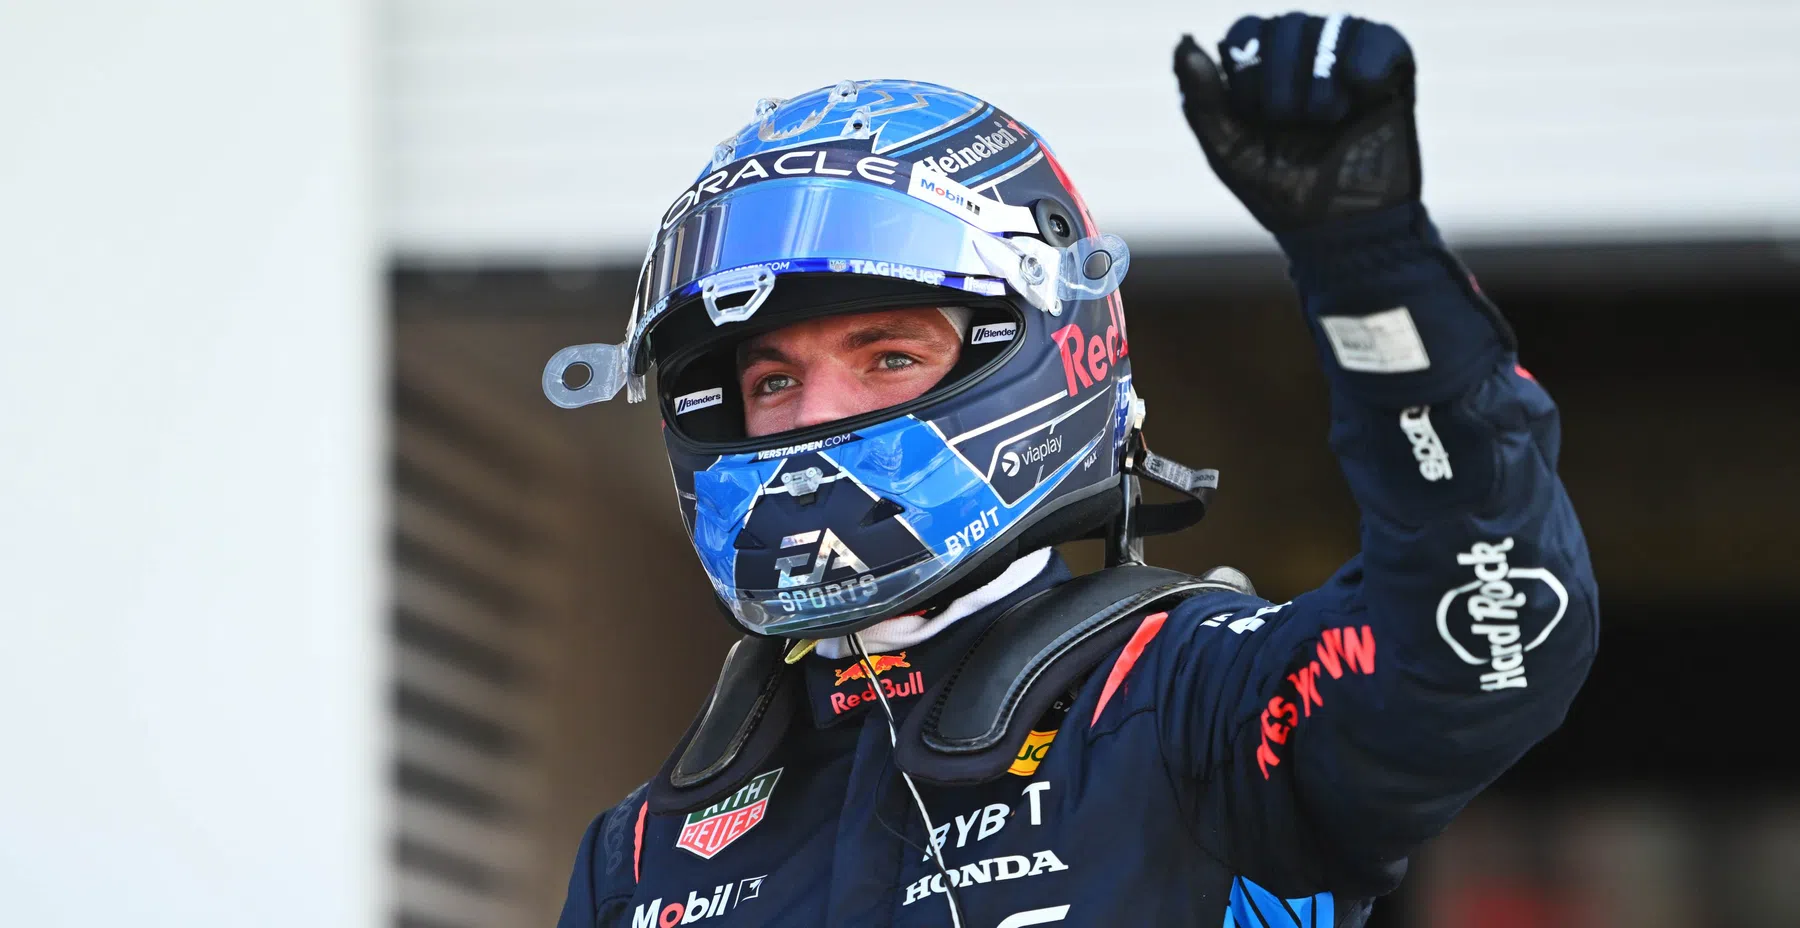 Verstappen vence a corrida simulada 24 horas de Nurburgring com a equipe Redline